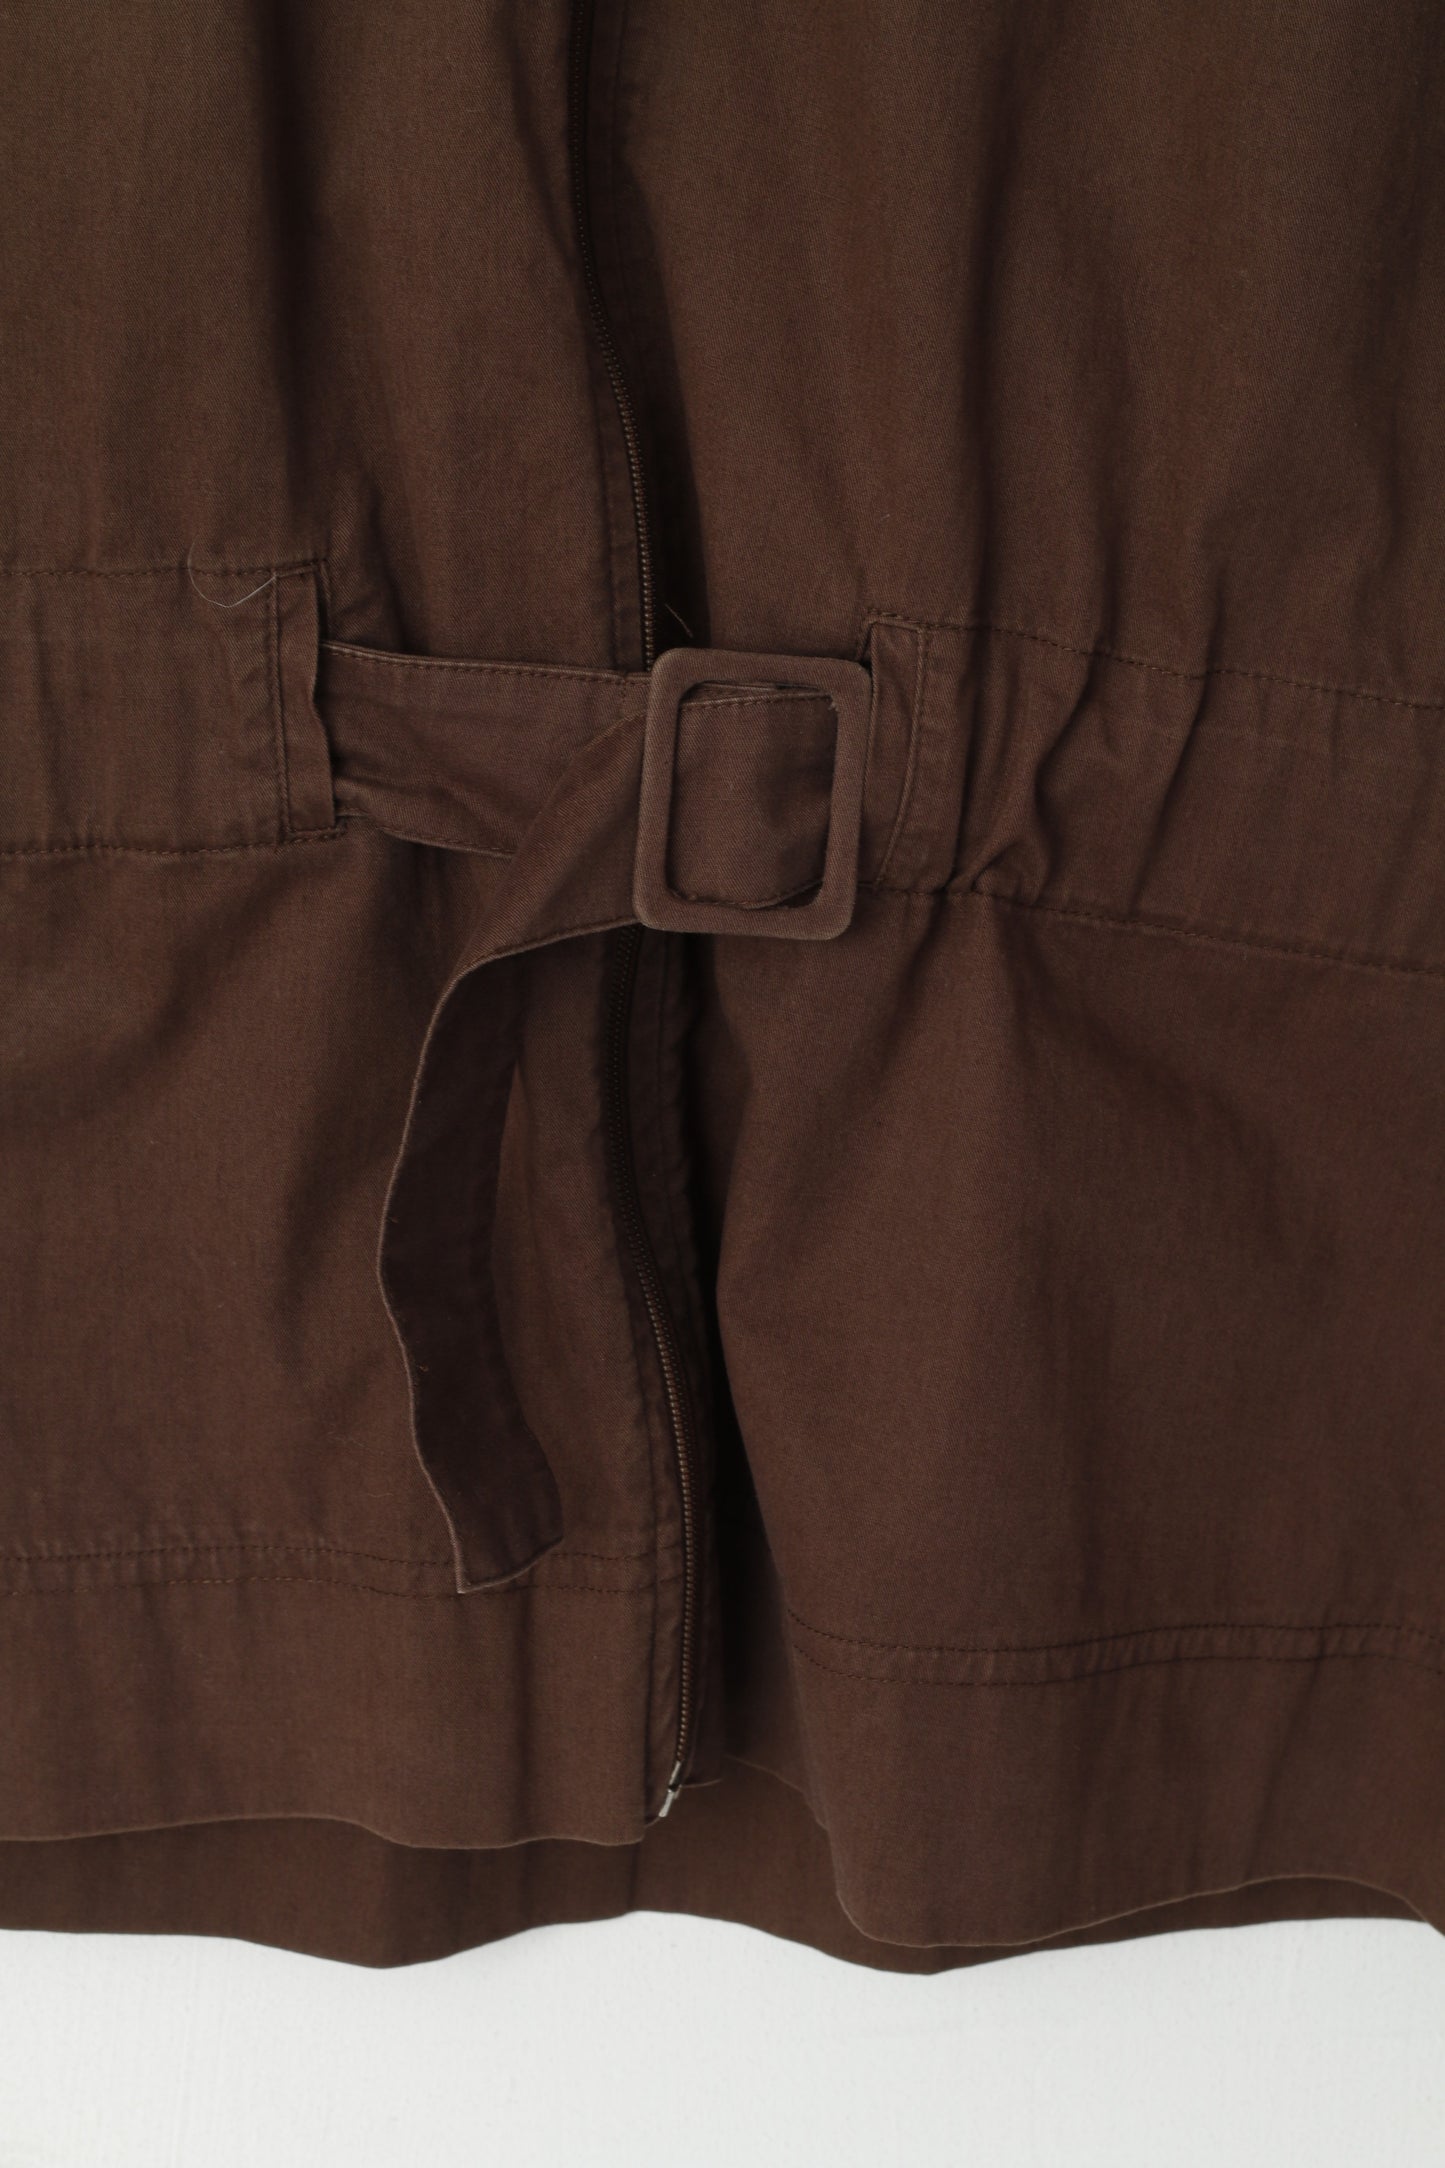 Reebok Classic Women 16 XL Jacket Brown Cotton Full Zipper Belted Stan Up Collar Top